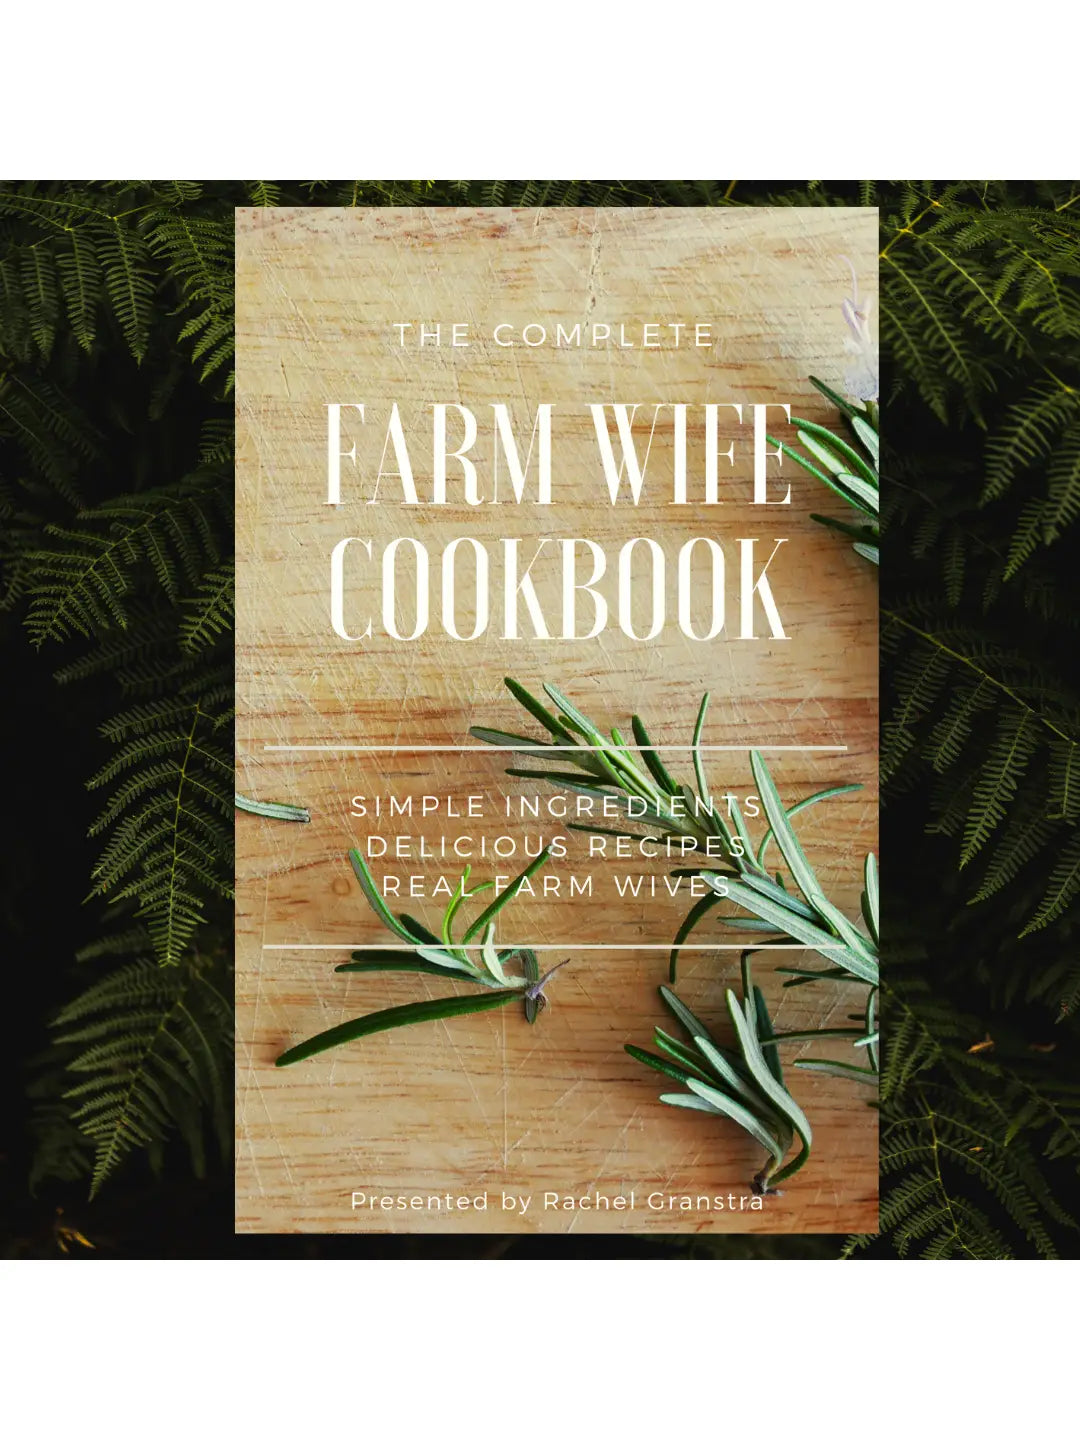 Farm Company Cookbooks